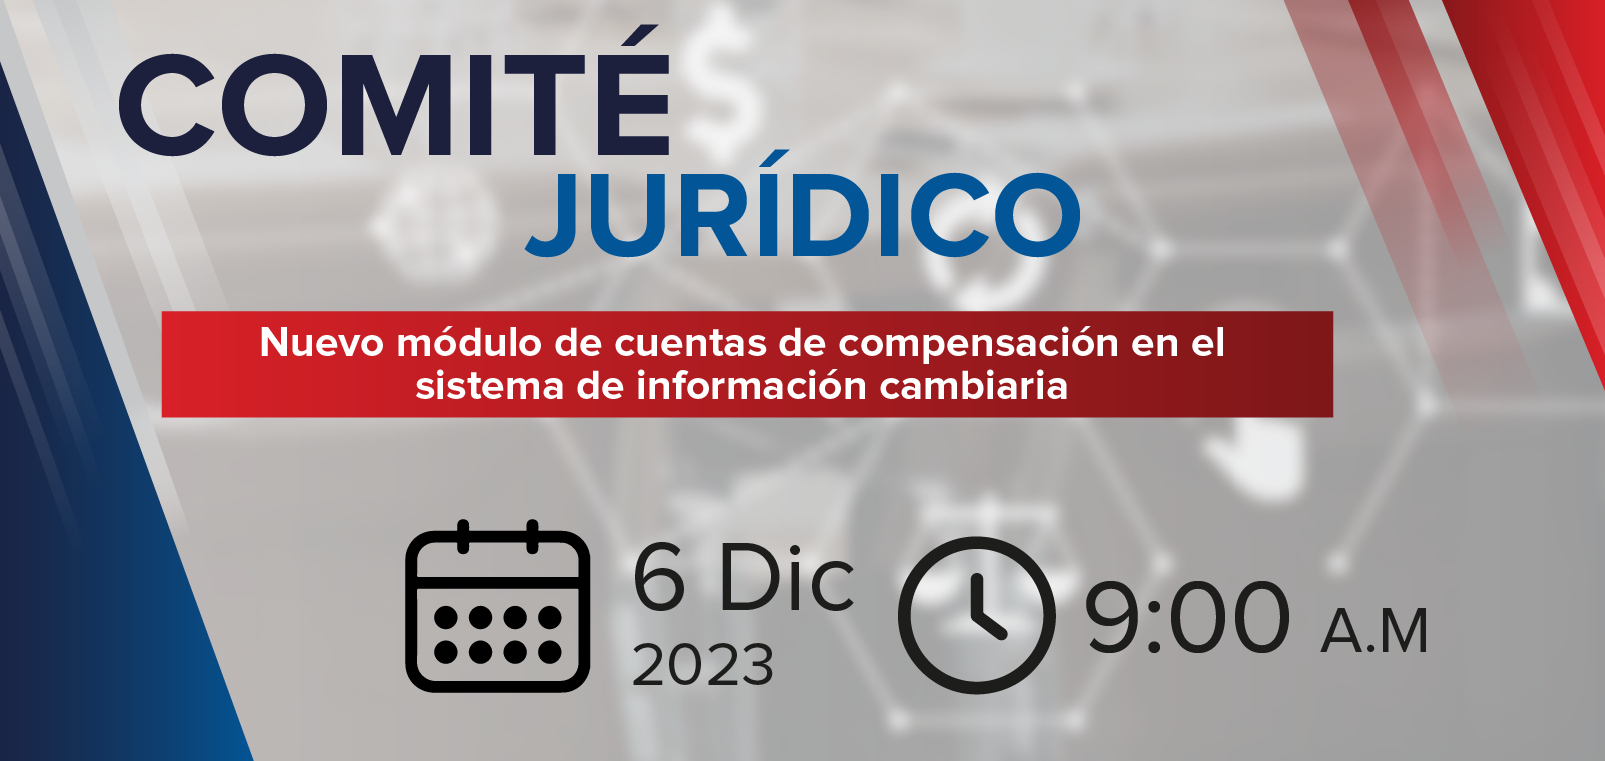 Comite Juridico: Nuevo modulo de cuentas de compensacion en el sistema de informacion cambiaria